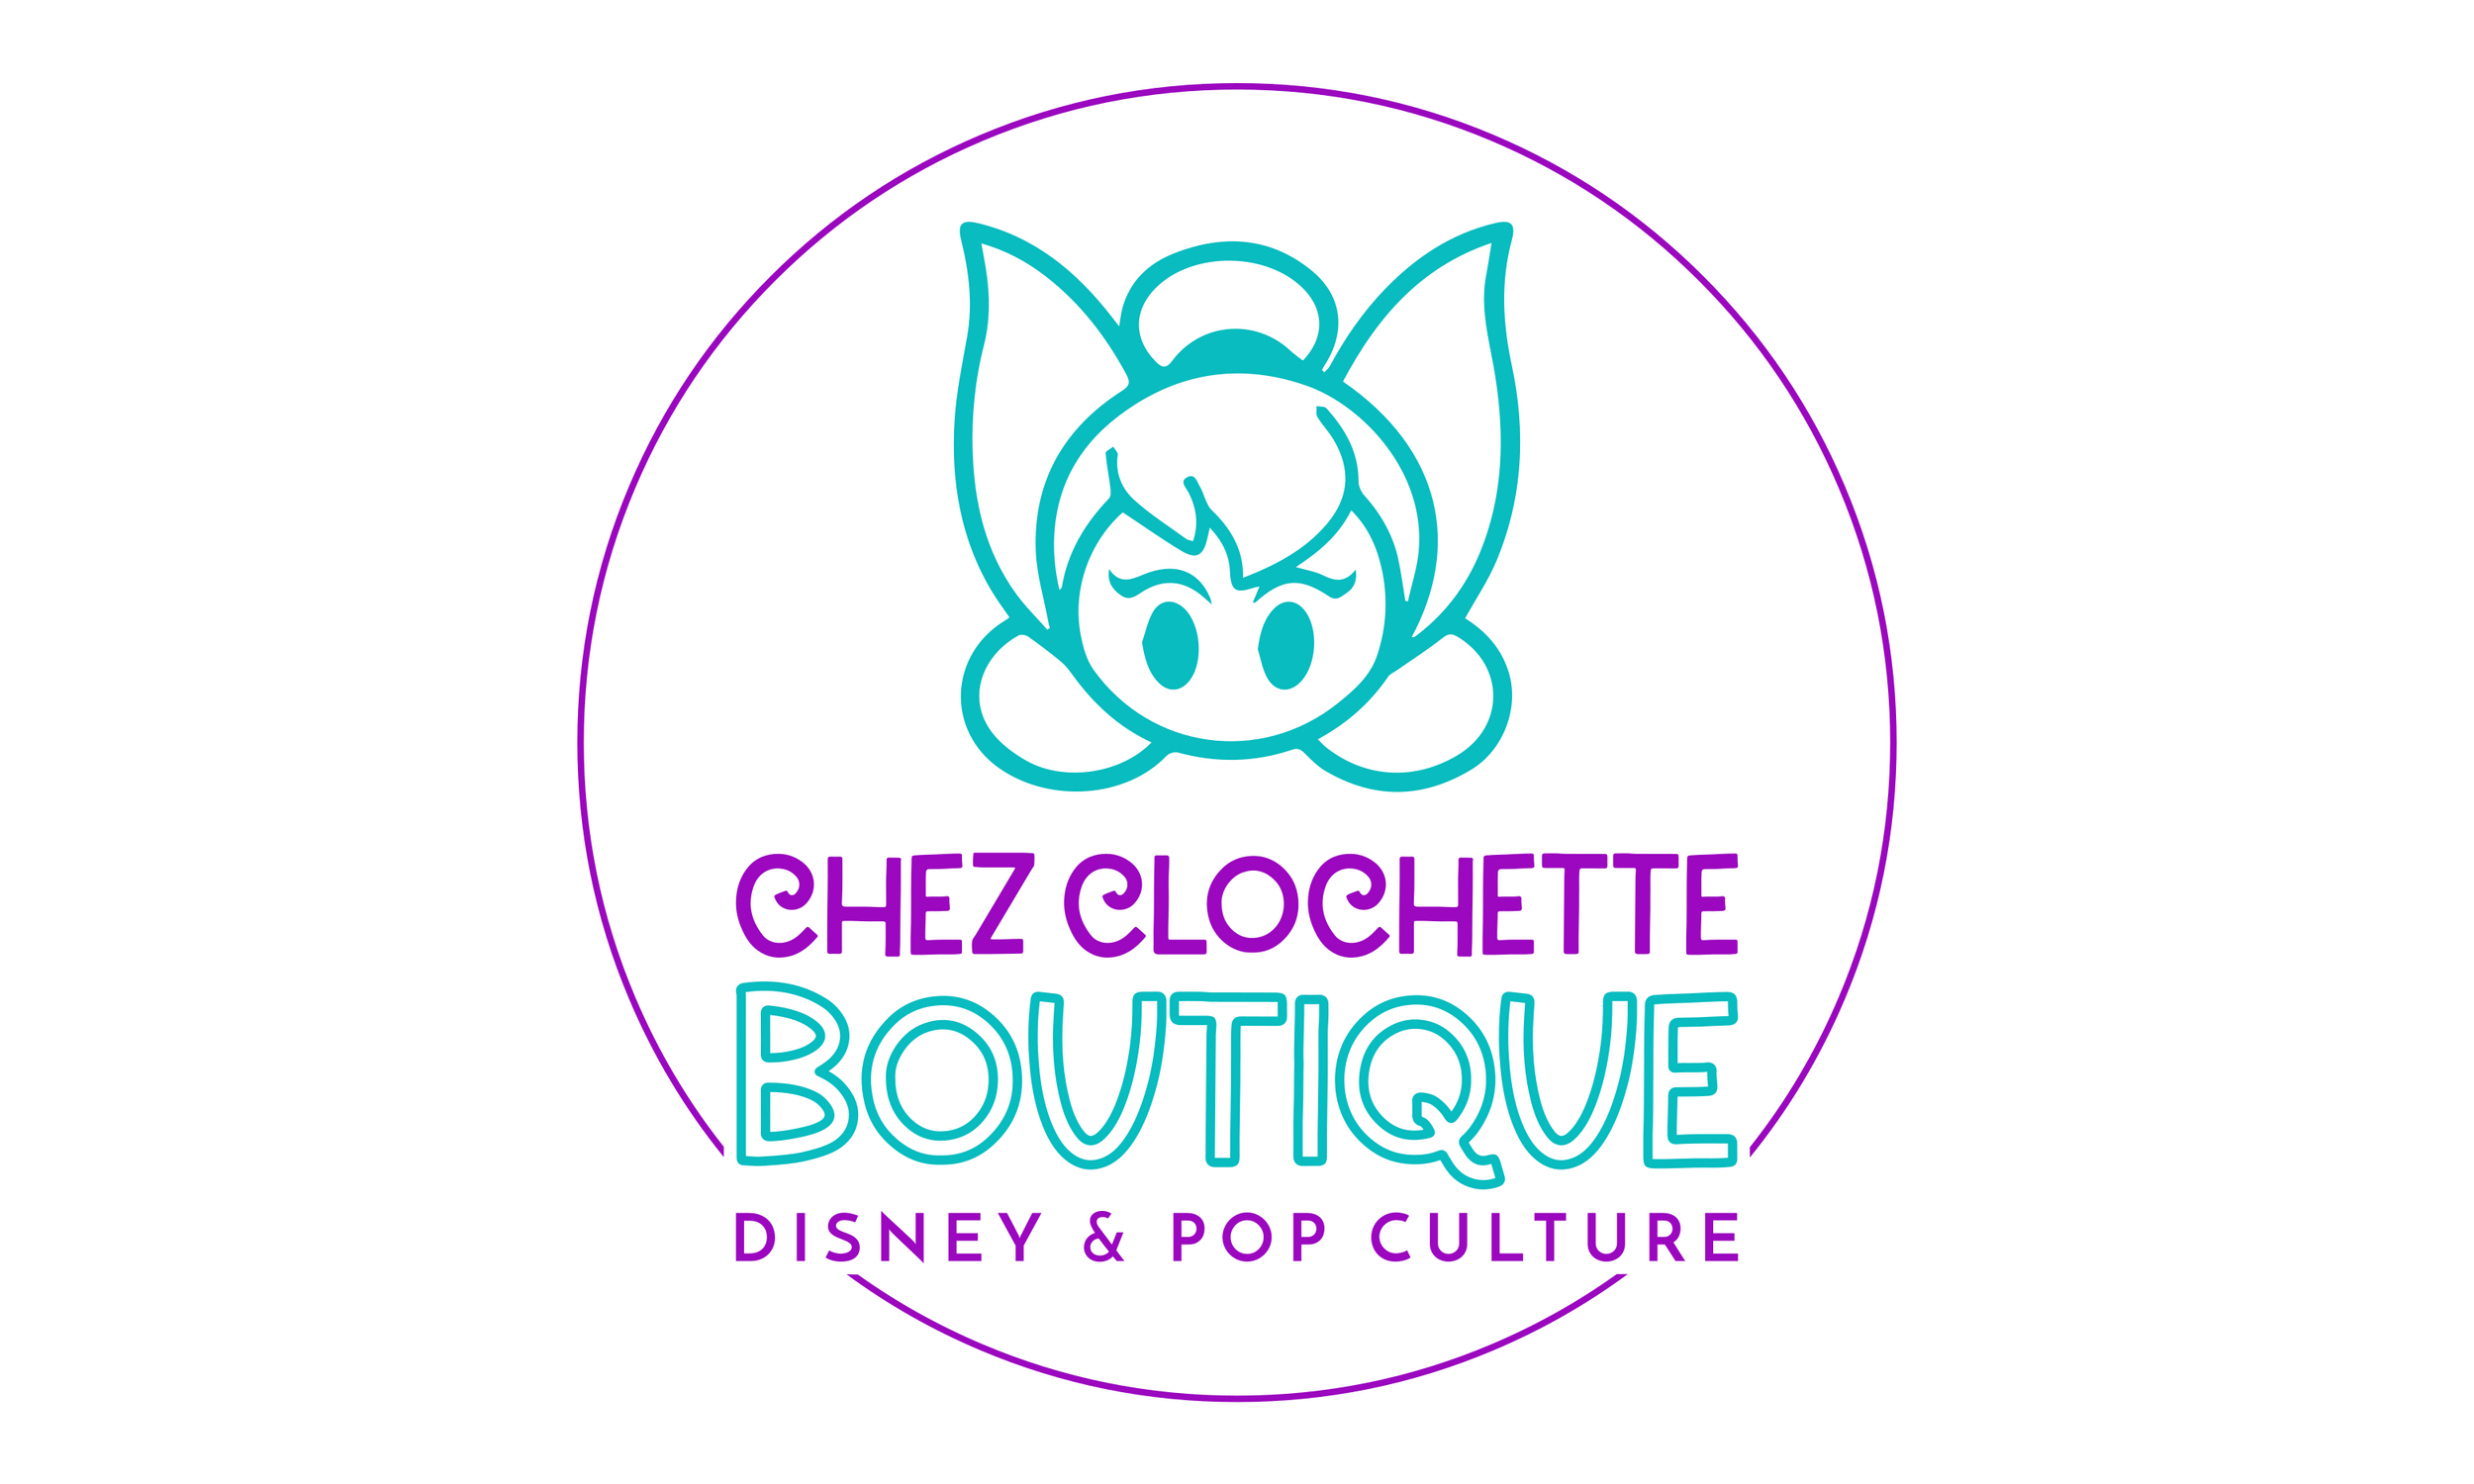 Bienvenue, Chez Clochette Boutique ! Disney & Pop Culture !